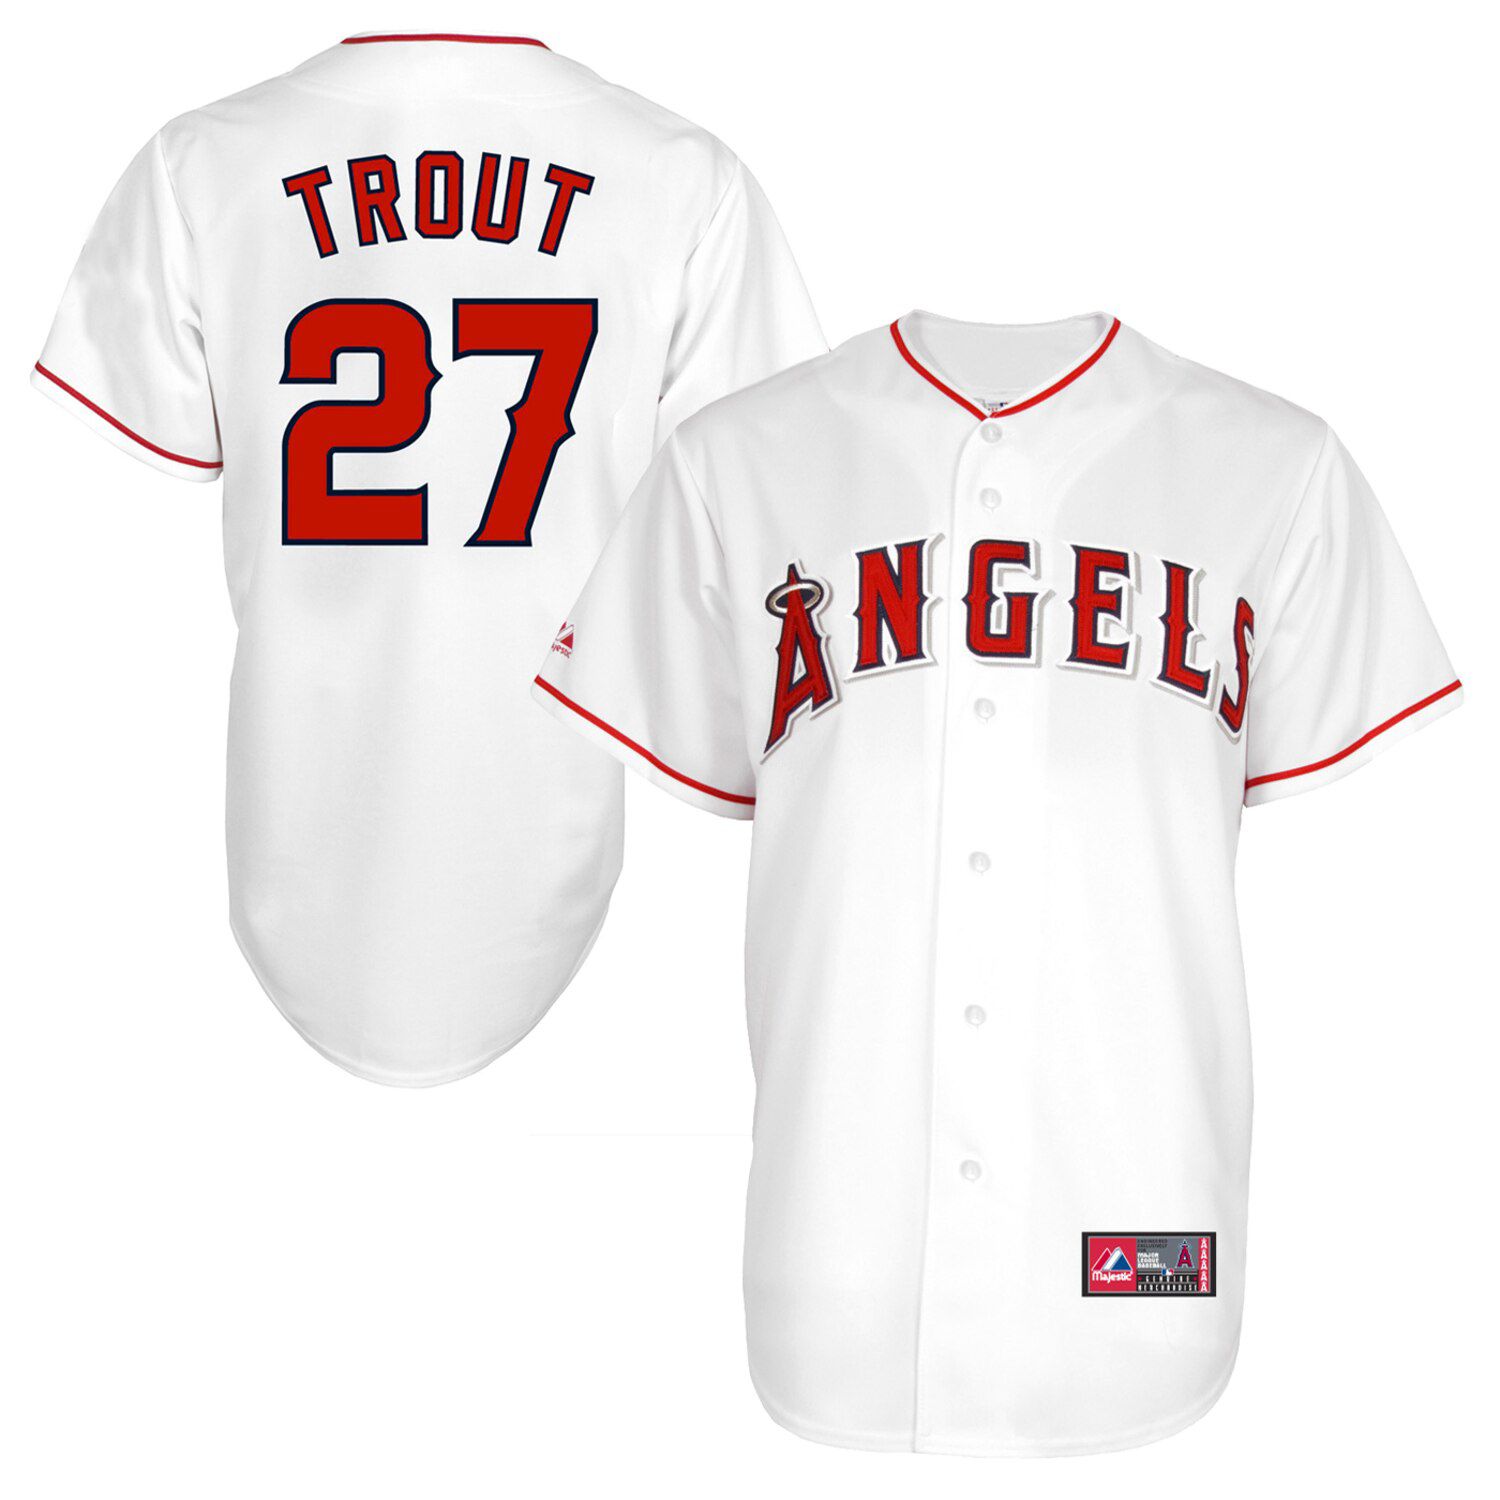 angels baseball shirts